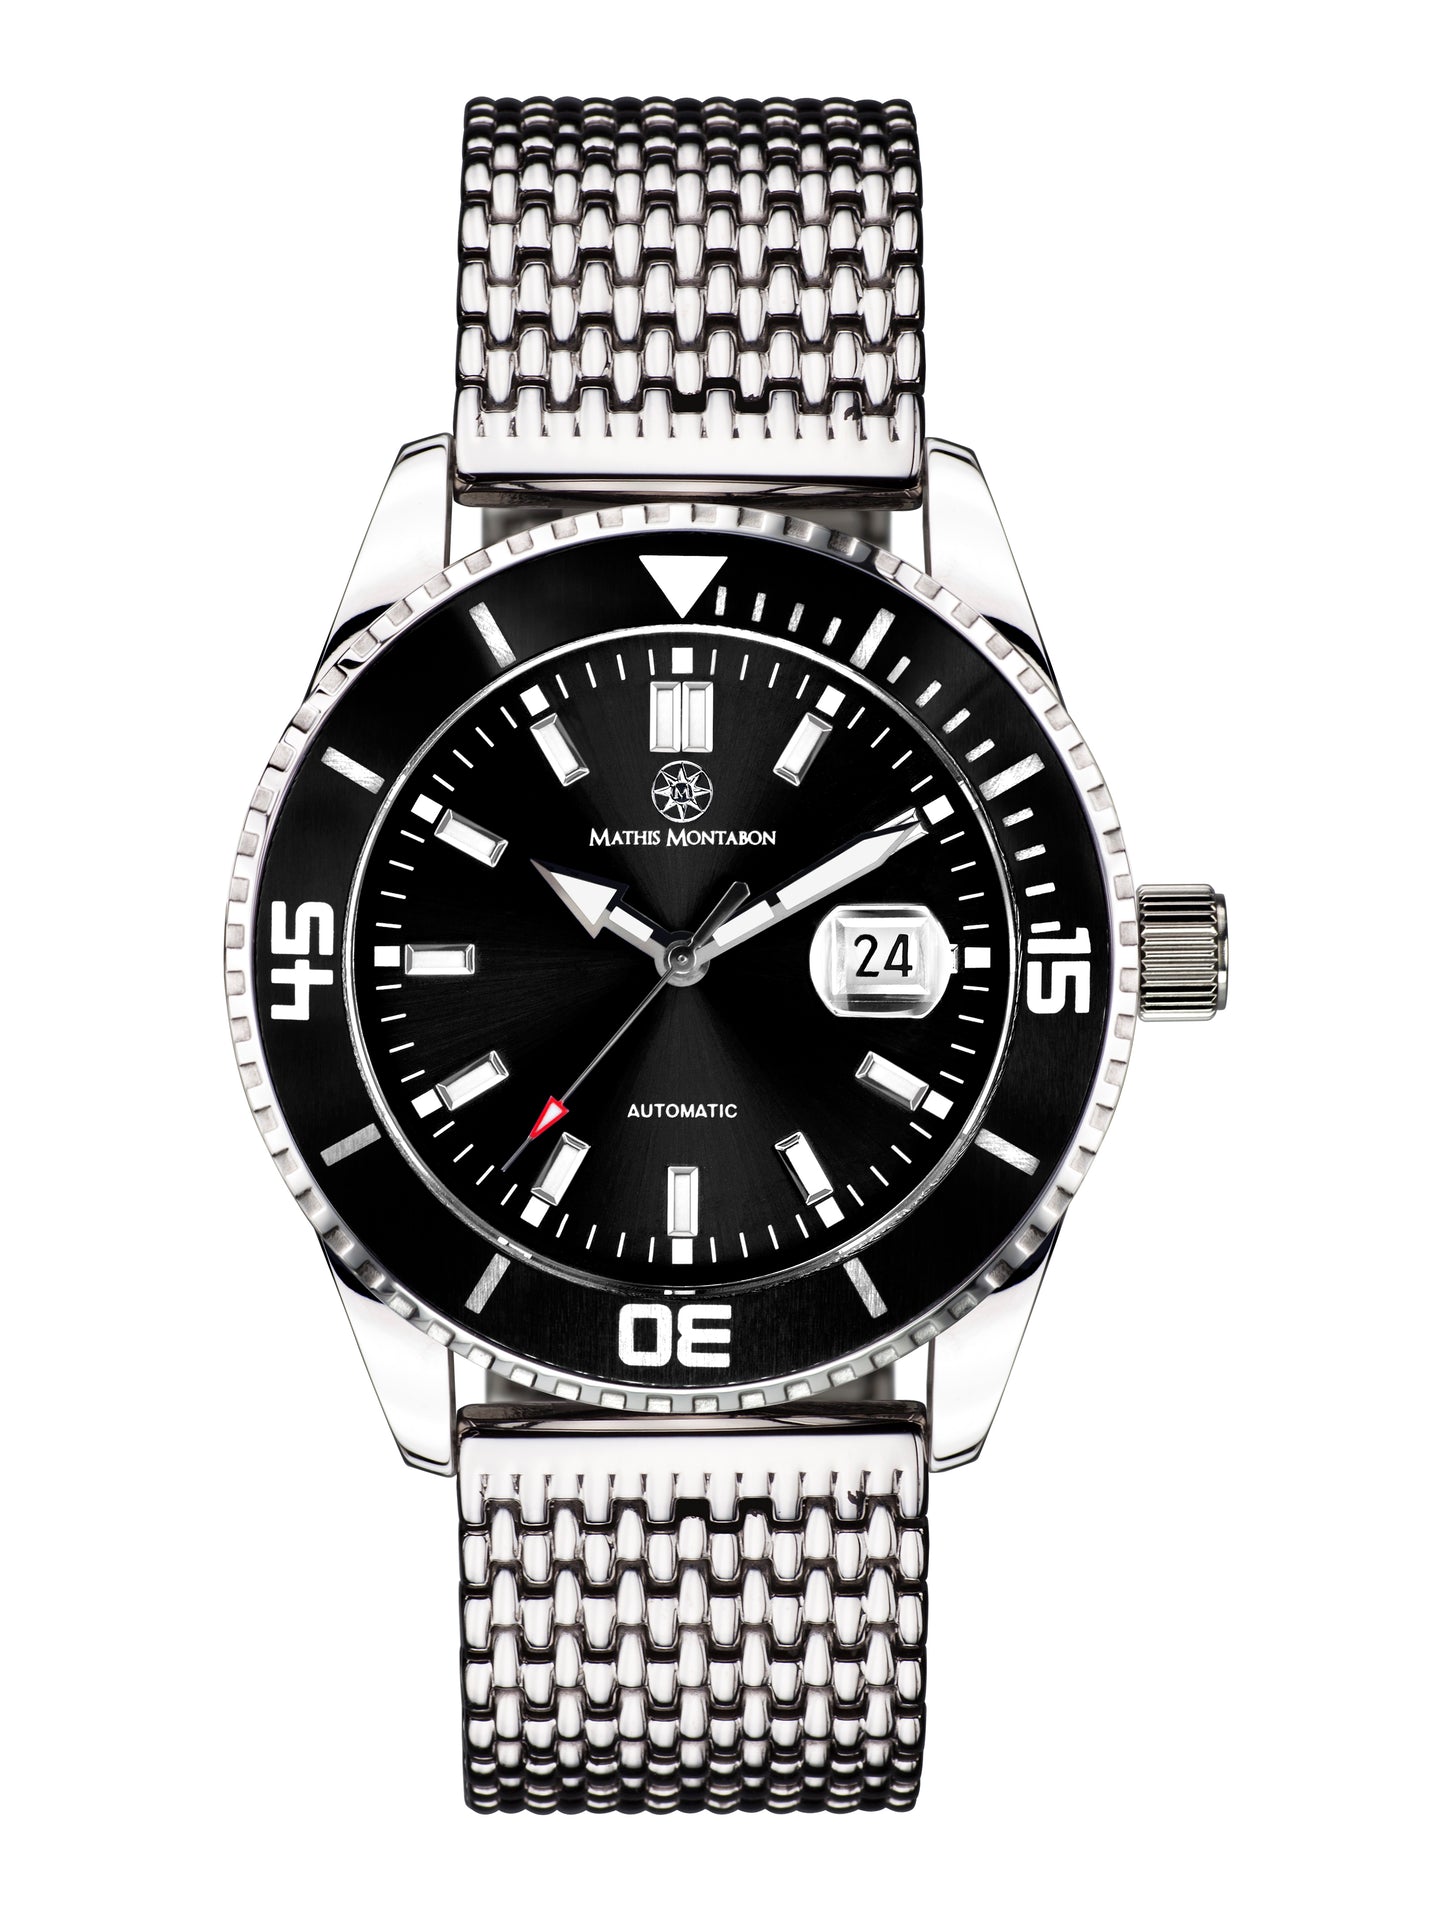 Automatic watches — Super Atlantique — Mathis Montabon — schwarz